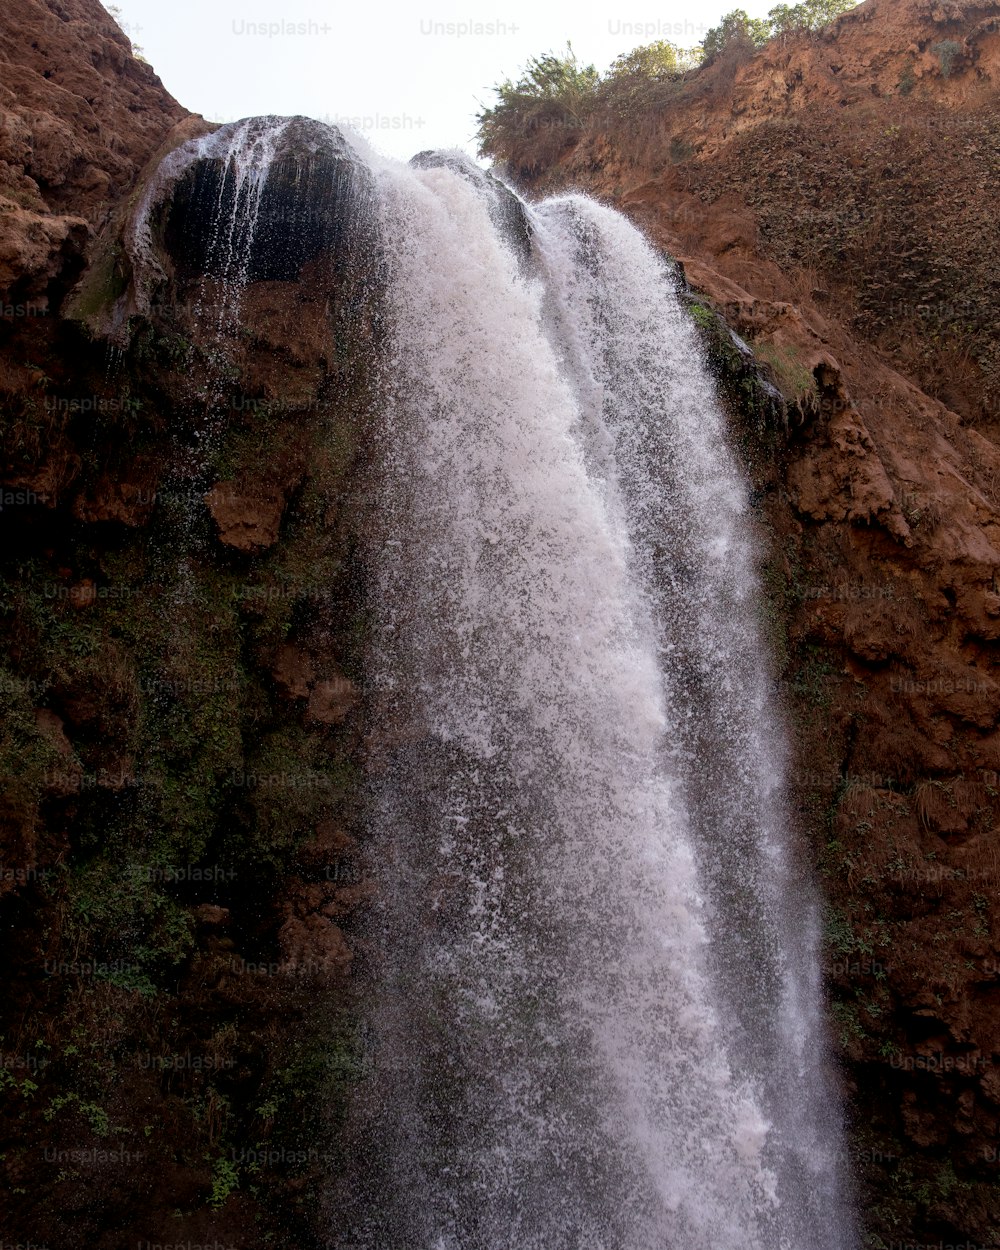 Ein sehr hoher Wasserfall, aus dem viel Wasser austritt